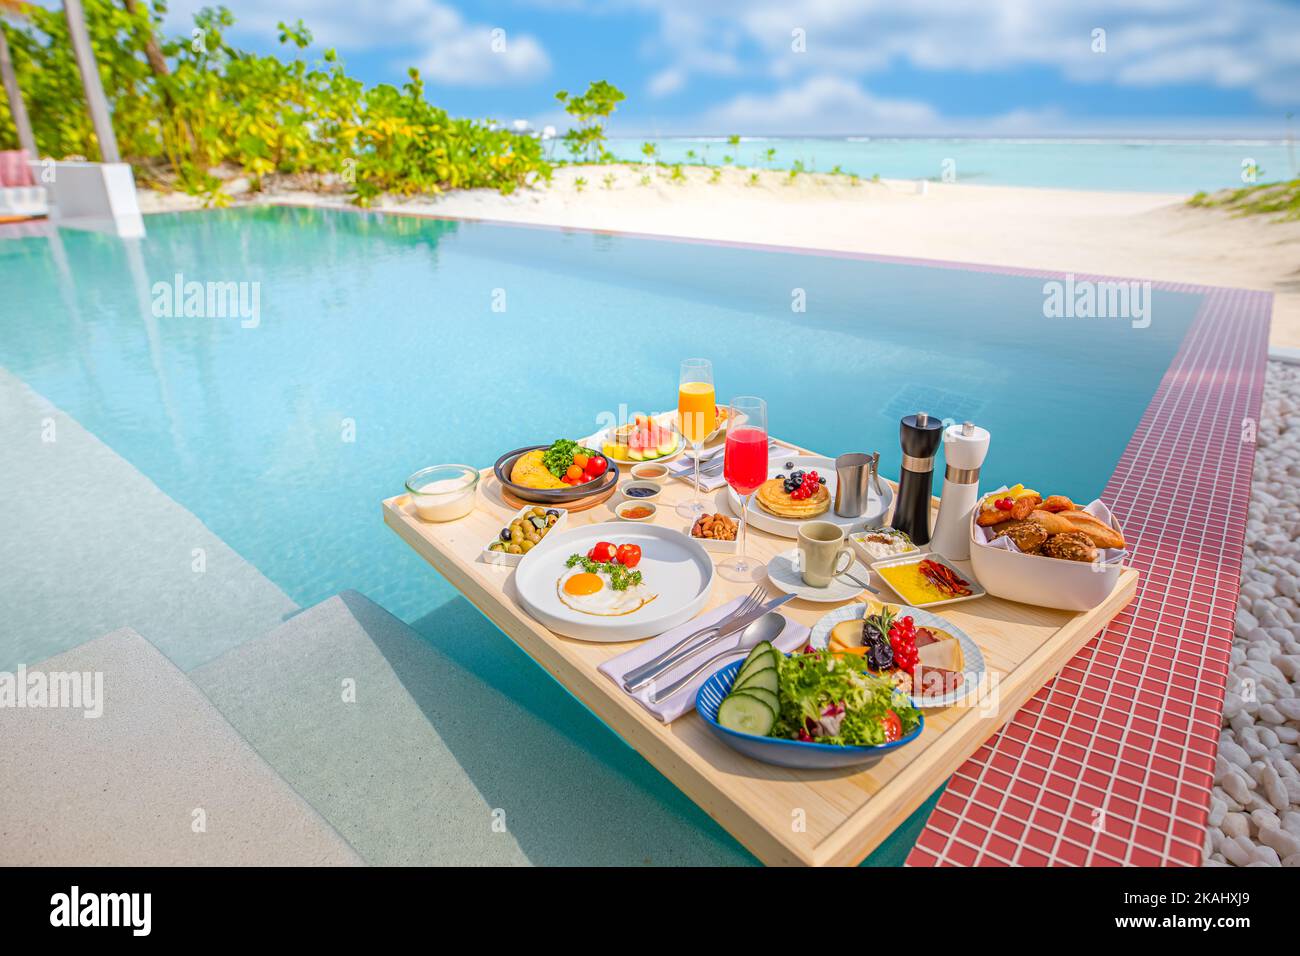 Frühstück im Swimmingpool, schwimmendes Frühstück im luxuriösen tropischen Resort. Tisch relaxen auf ruhigem Poolwasser, gesundes Frühstück und Obstteller Stockfoto